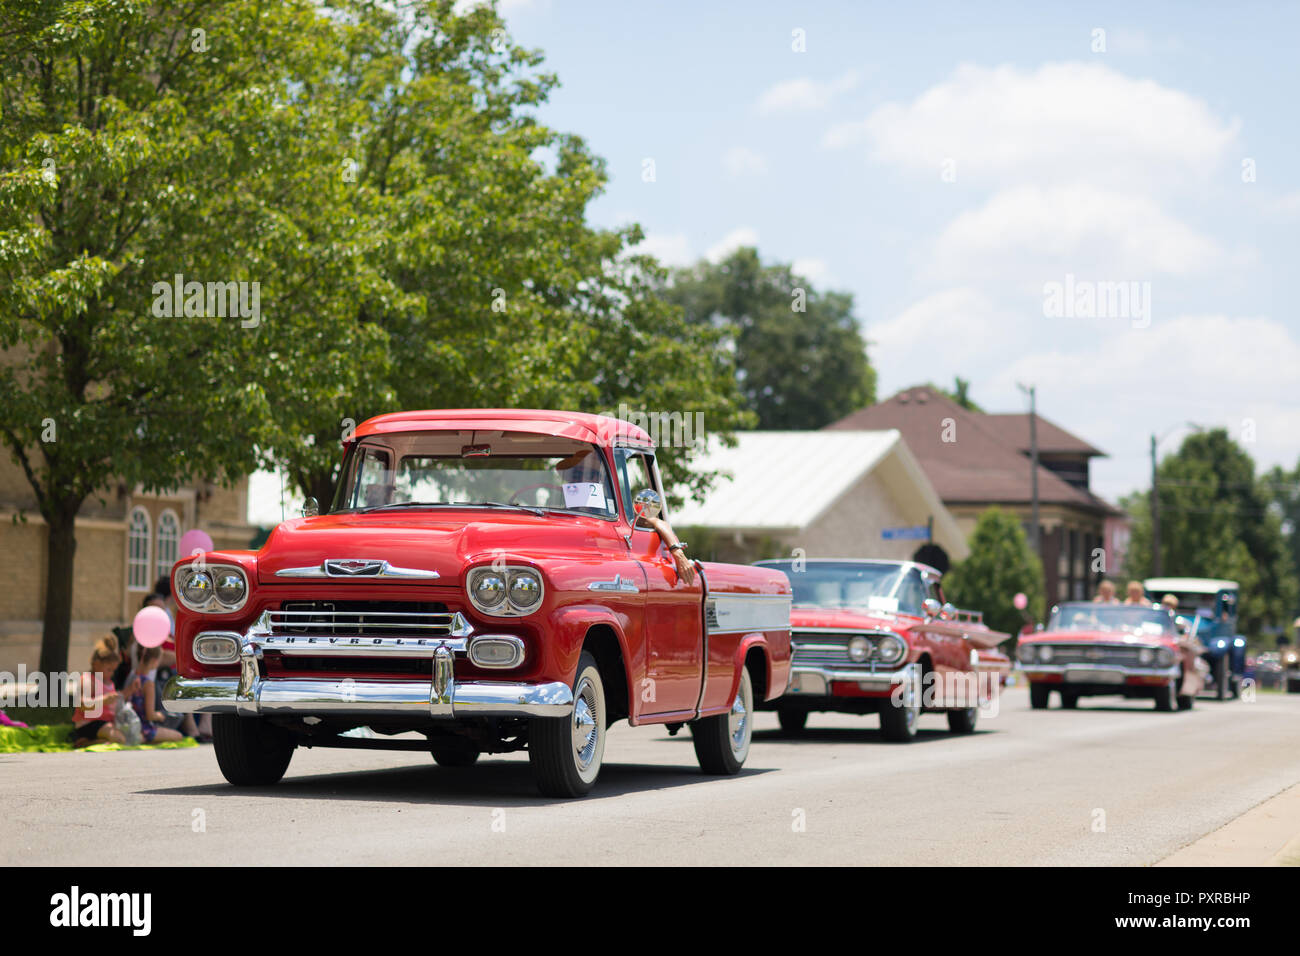 En Kokomo, Indiana, Estados Unidos de América - Junio 30, 2018: Haynes Apperson Parade, un clásico camión Chevrolet Apache bajando por la carretera durante el desfile Foto de stock